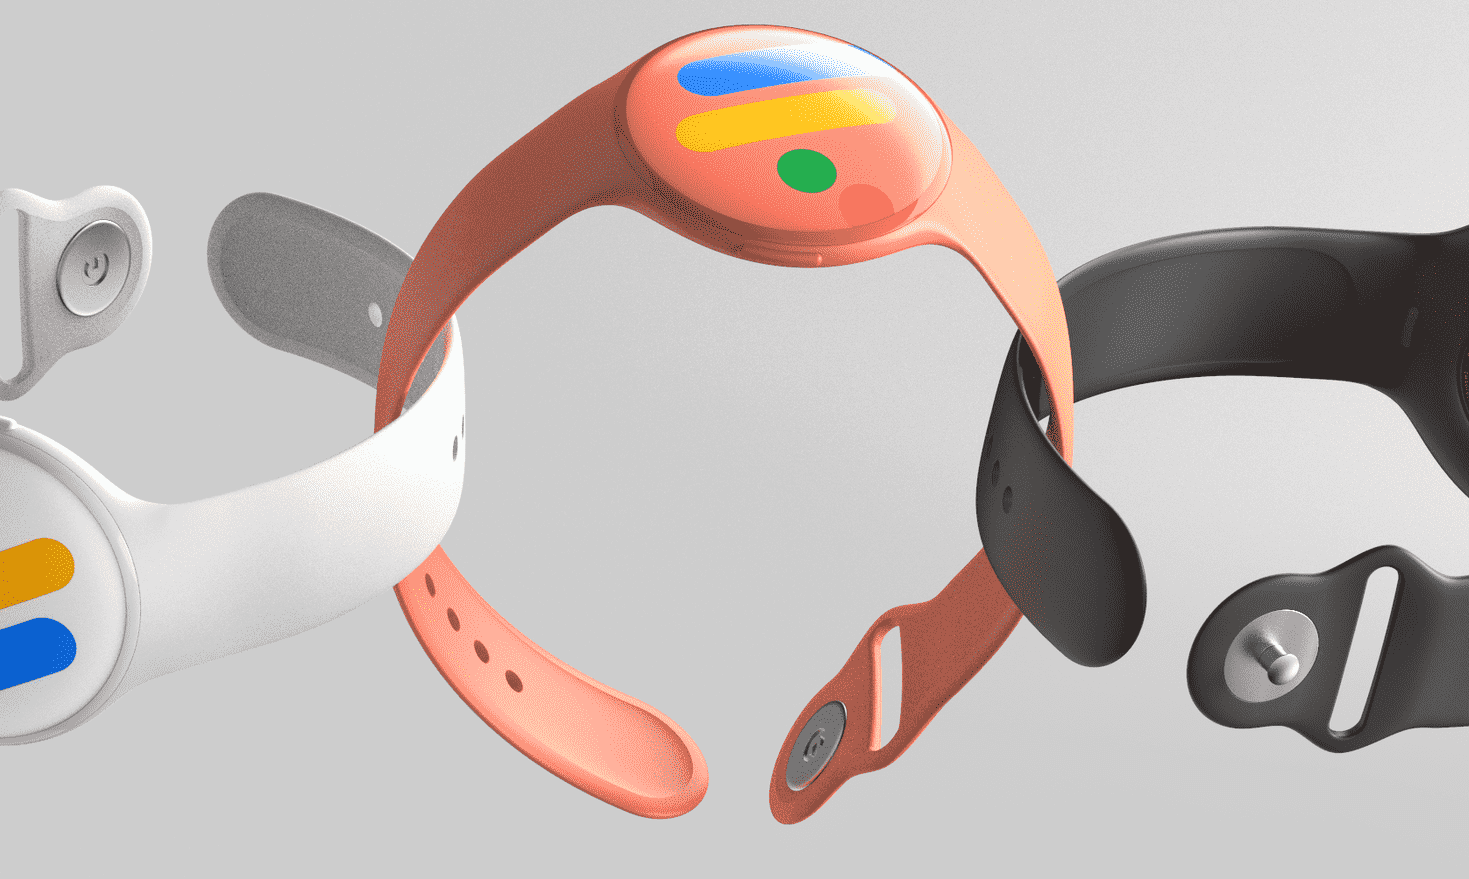 Conception conceptuelle de James Tsai pour la montre Pixel Watch, qui fait l'objet de nombreuses rumeurs